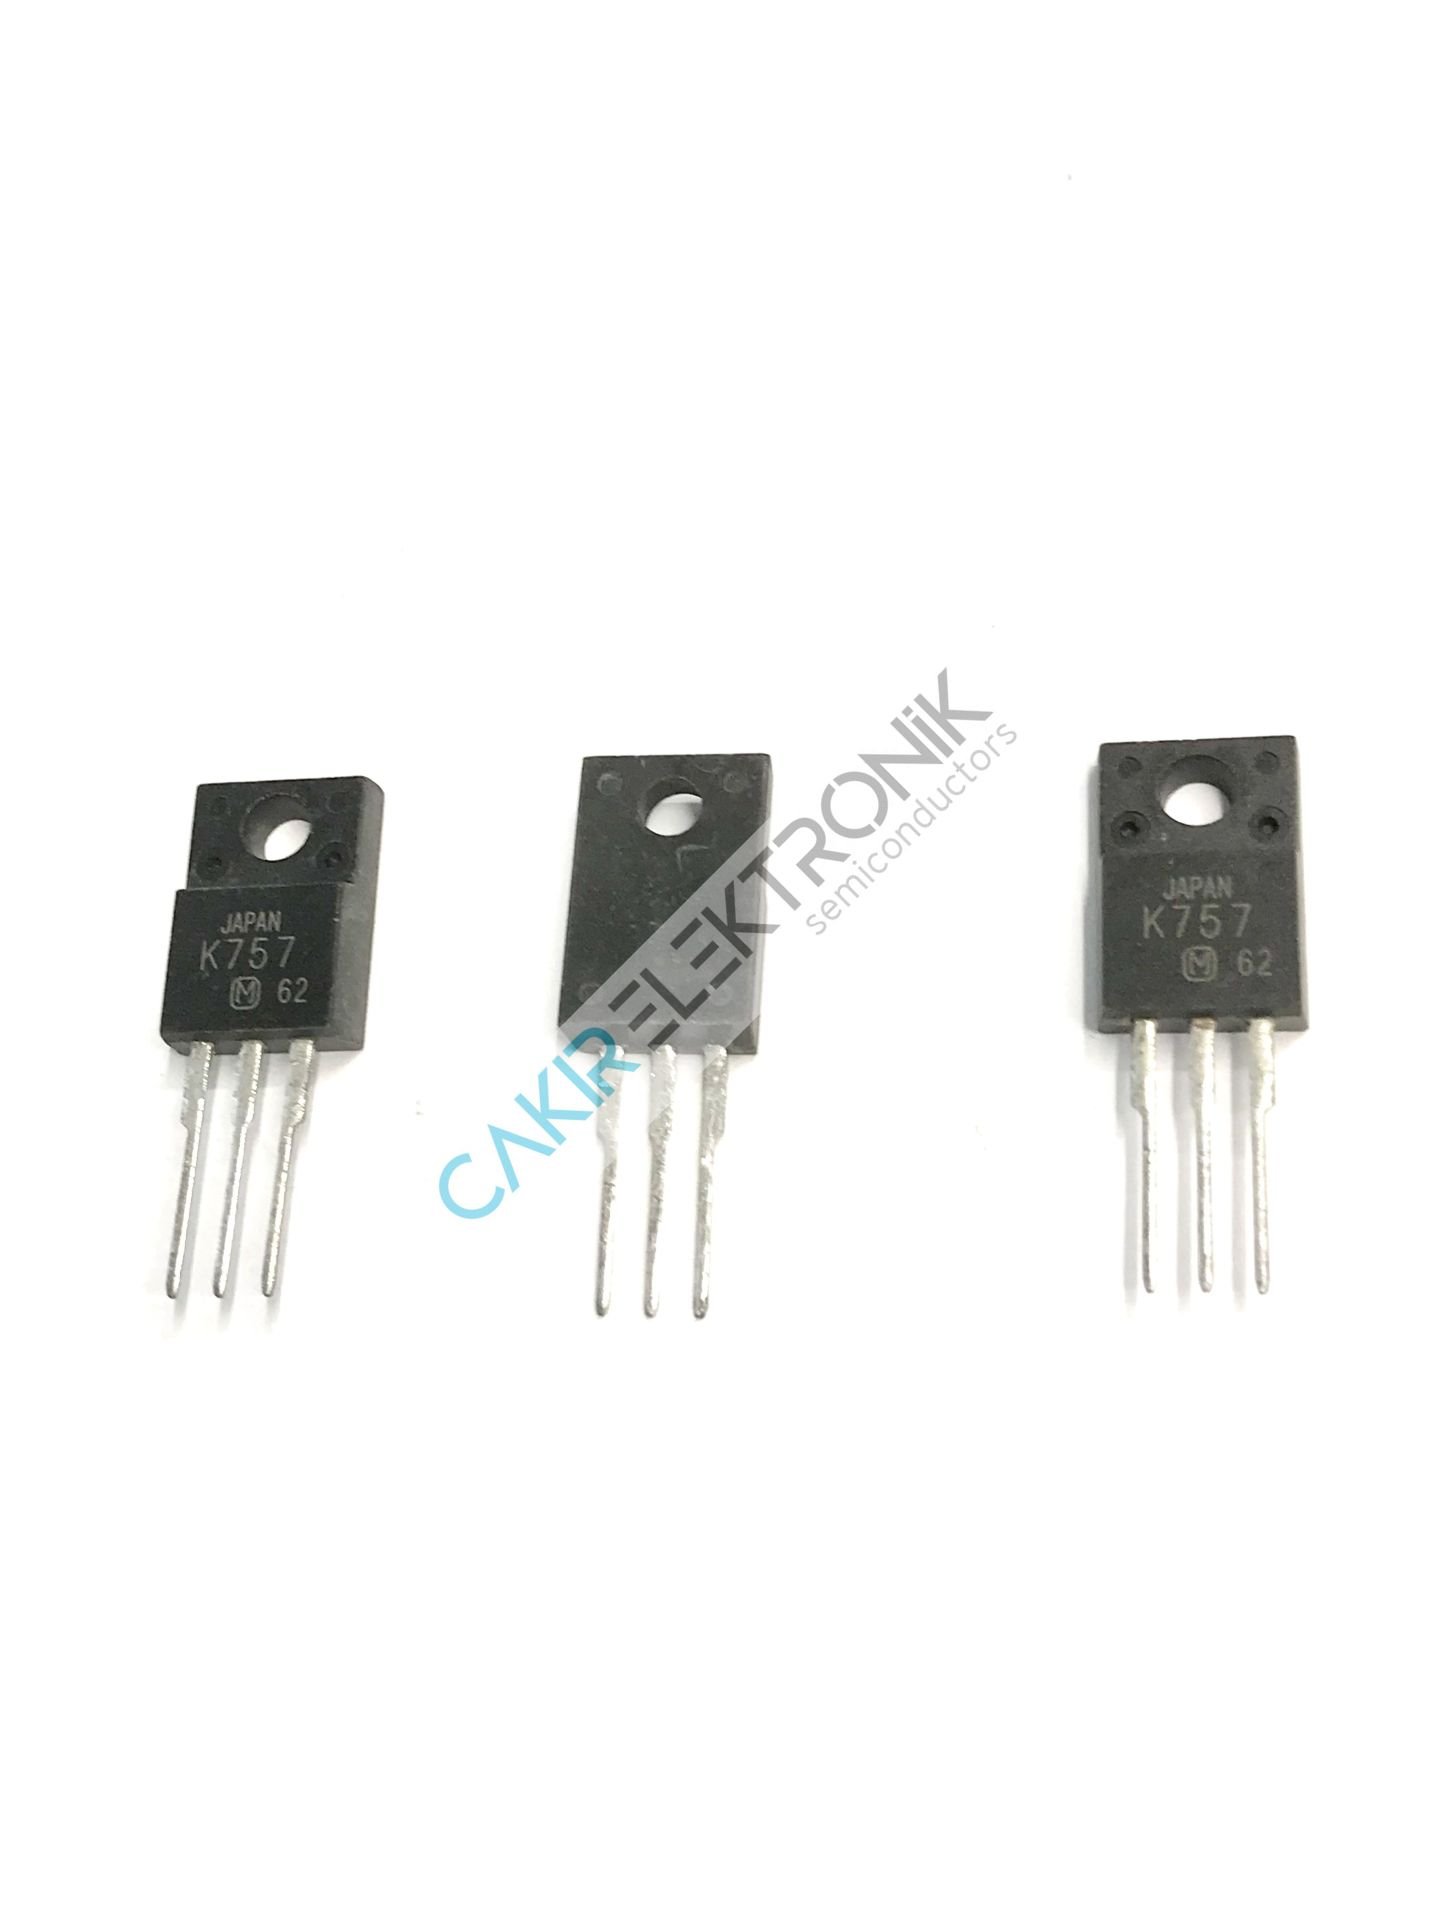 2SK757 - K757  10A. 200V. N-Channel MOSFET Transistor